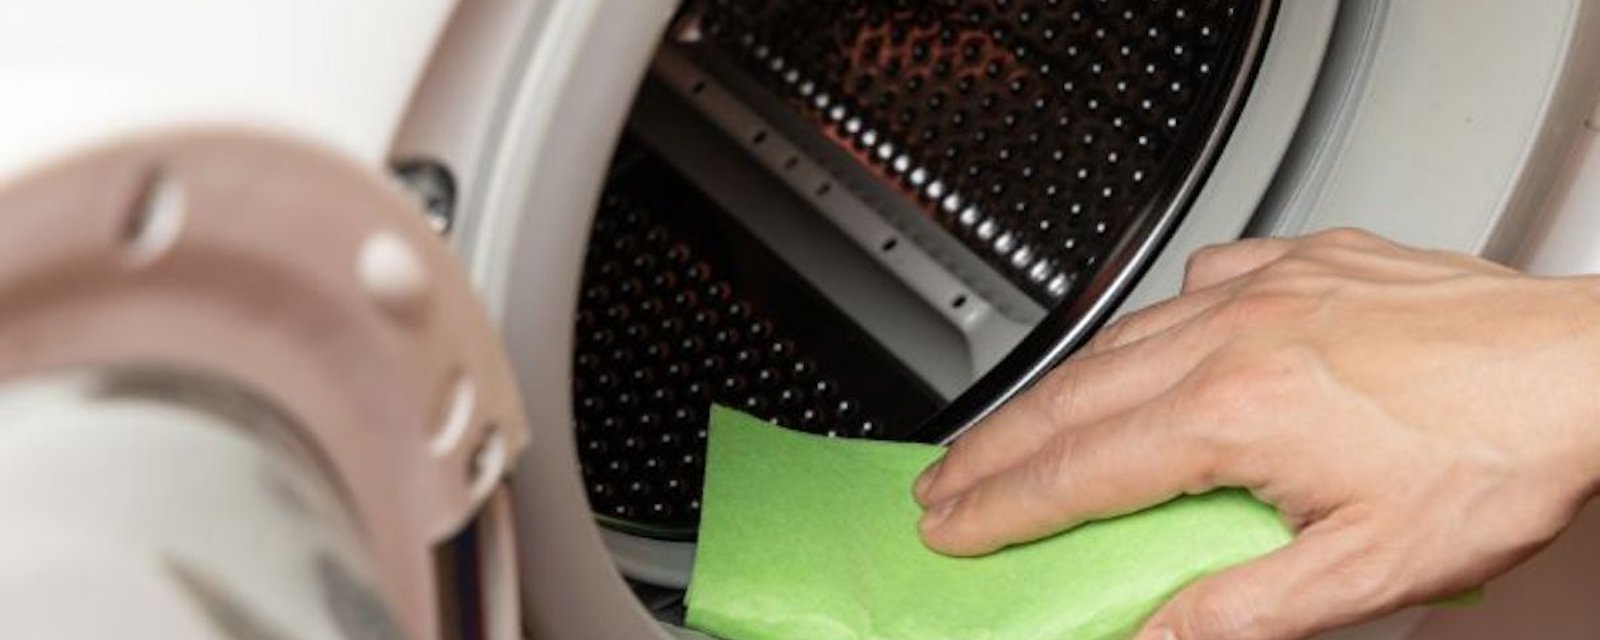 Comment éliminer les moisissures sur le joint de la machine à laver